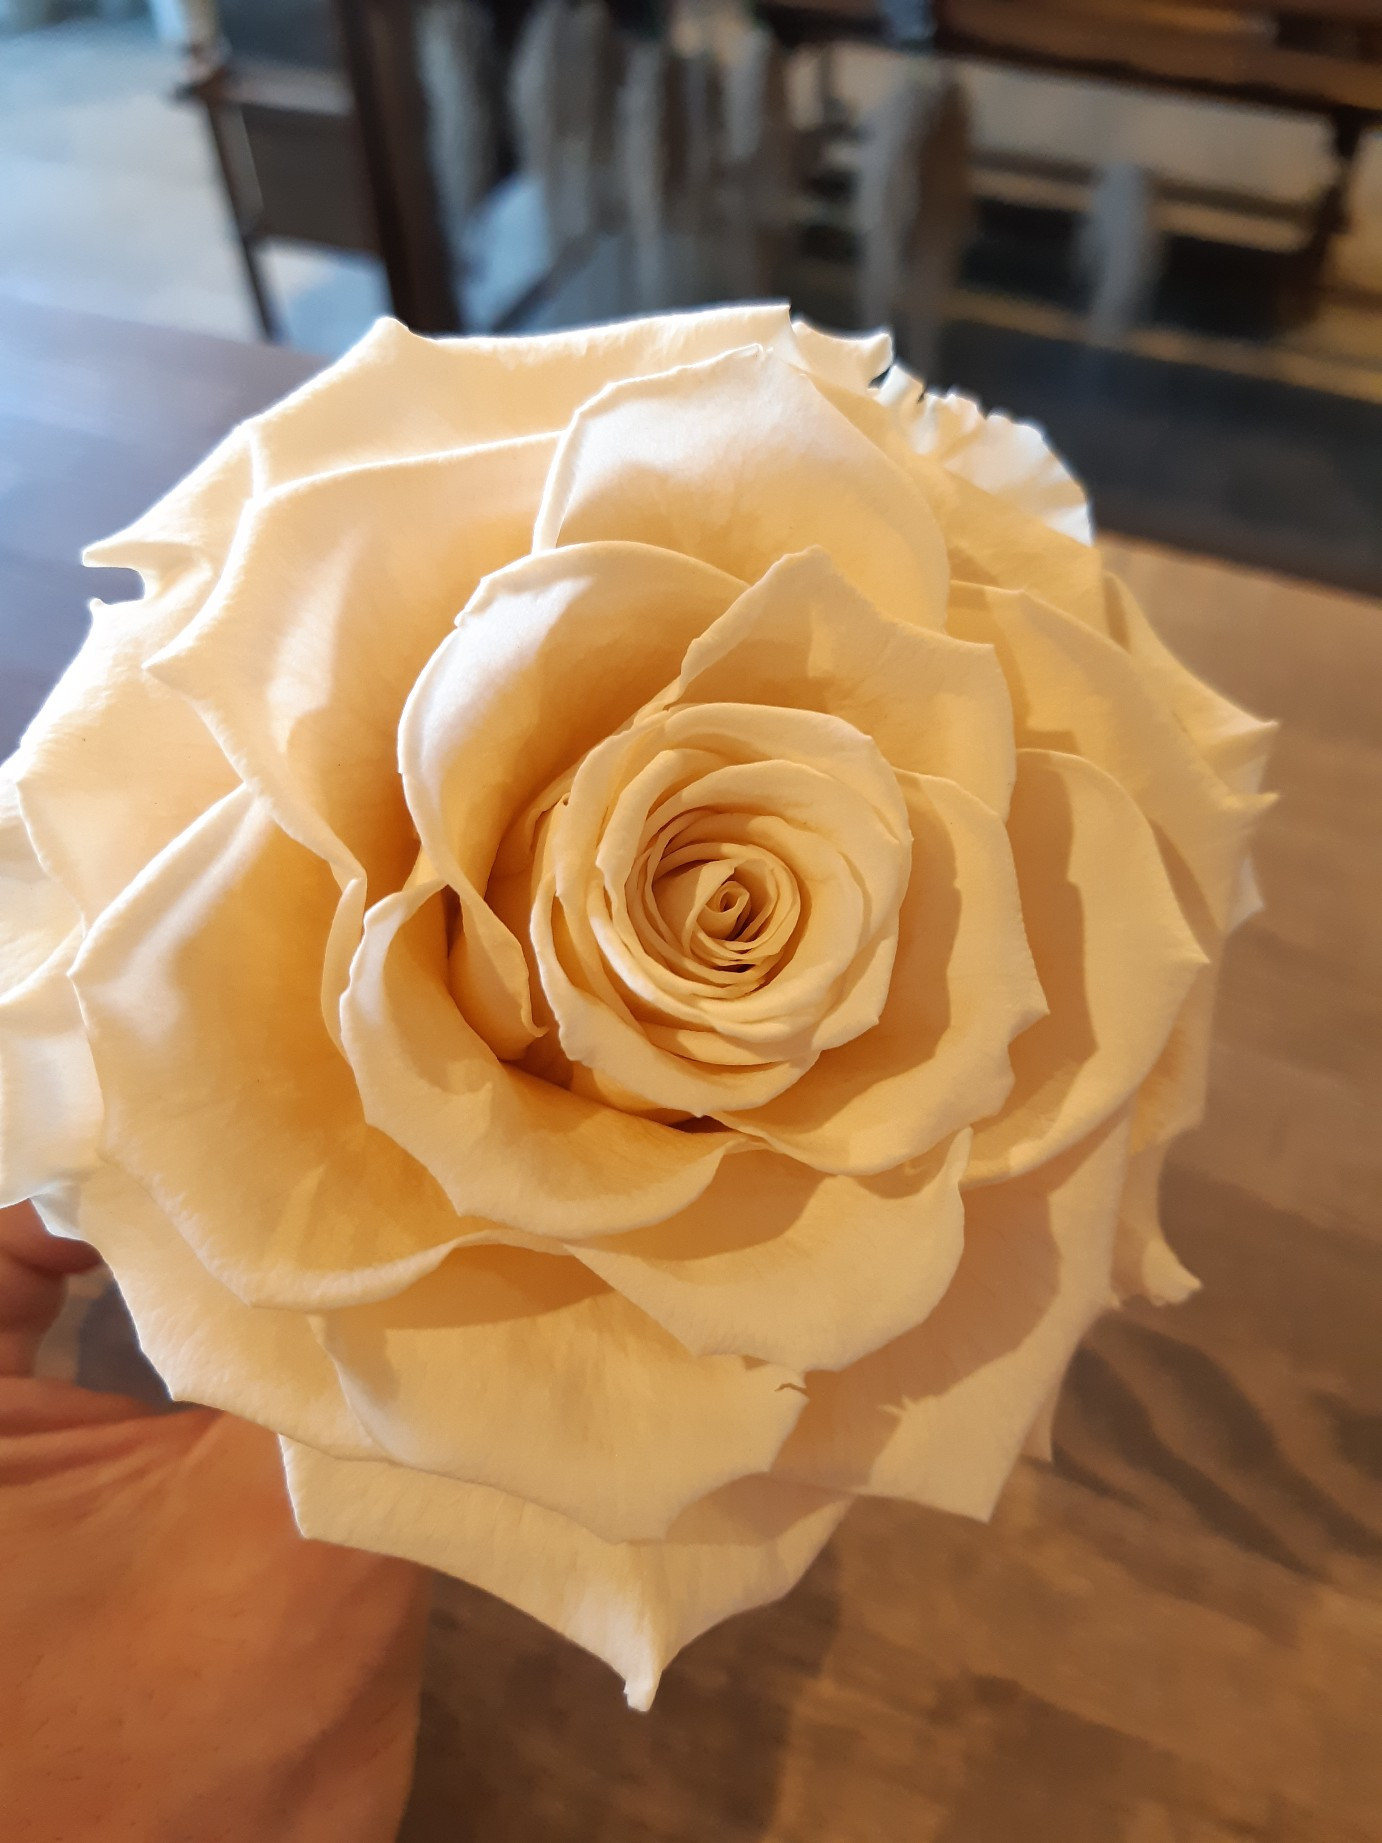 花屋を大阪で運営している人気生花店 結いはなが運営しているブログです